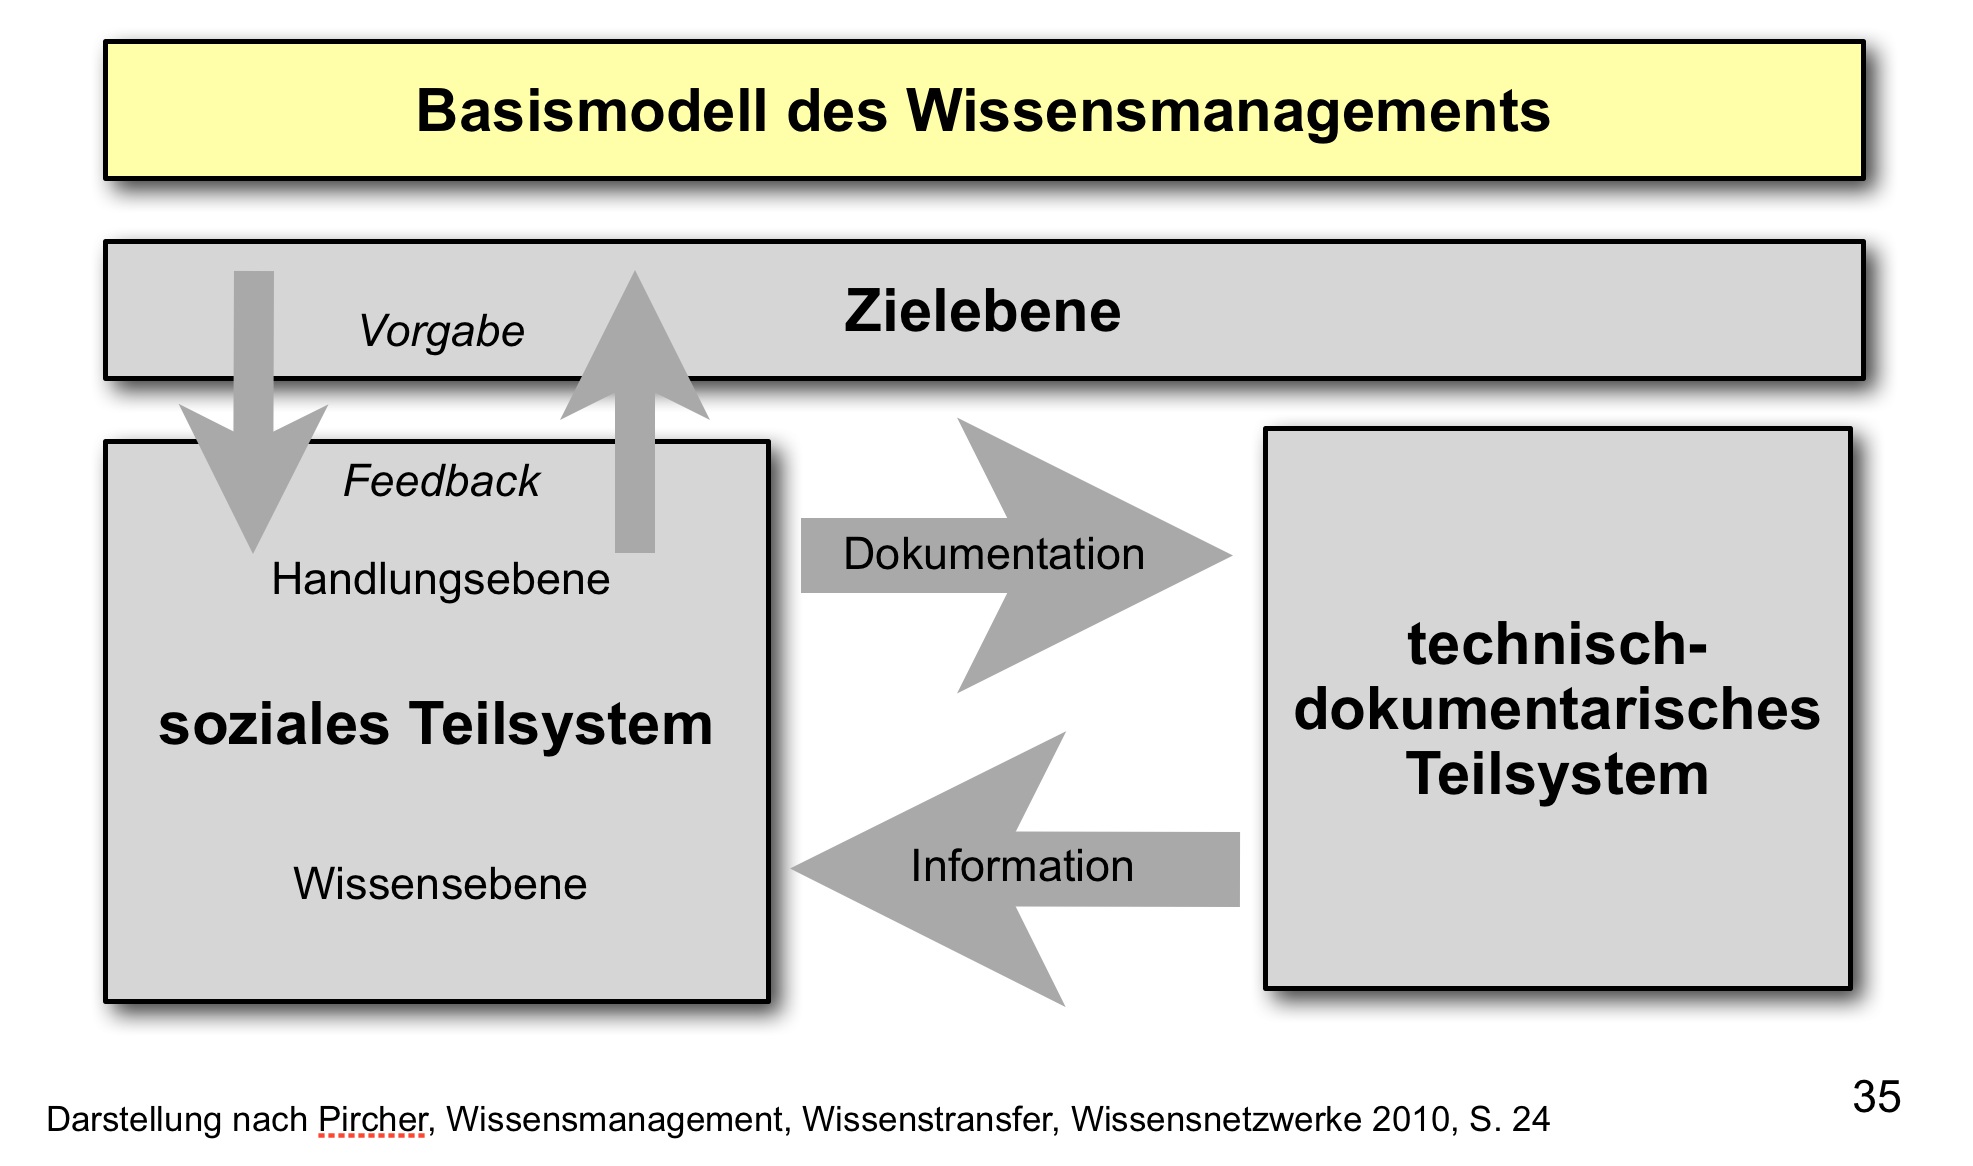  (image: https://hssm.hqedv.de/uploads/WissensmanagementOrganisation/WM_ganzheitlicher_Ansatz.jpg) 